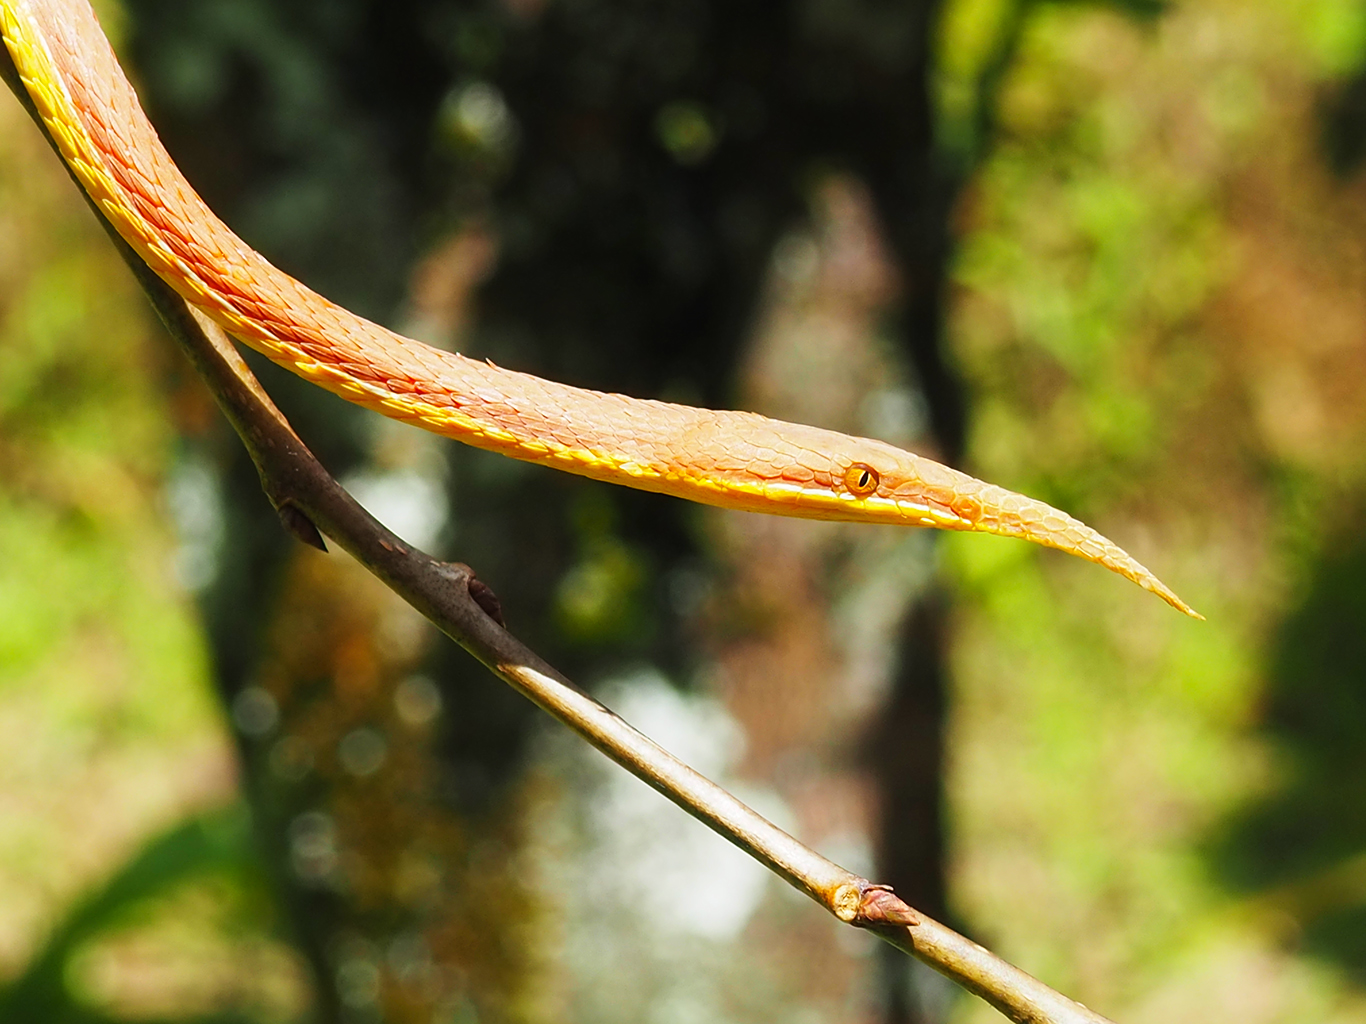 Langaha listonosá je endemickým hadem žijícím téměř na celém ostrově